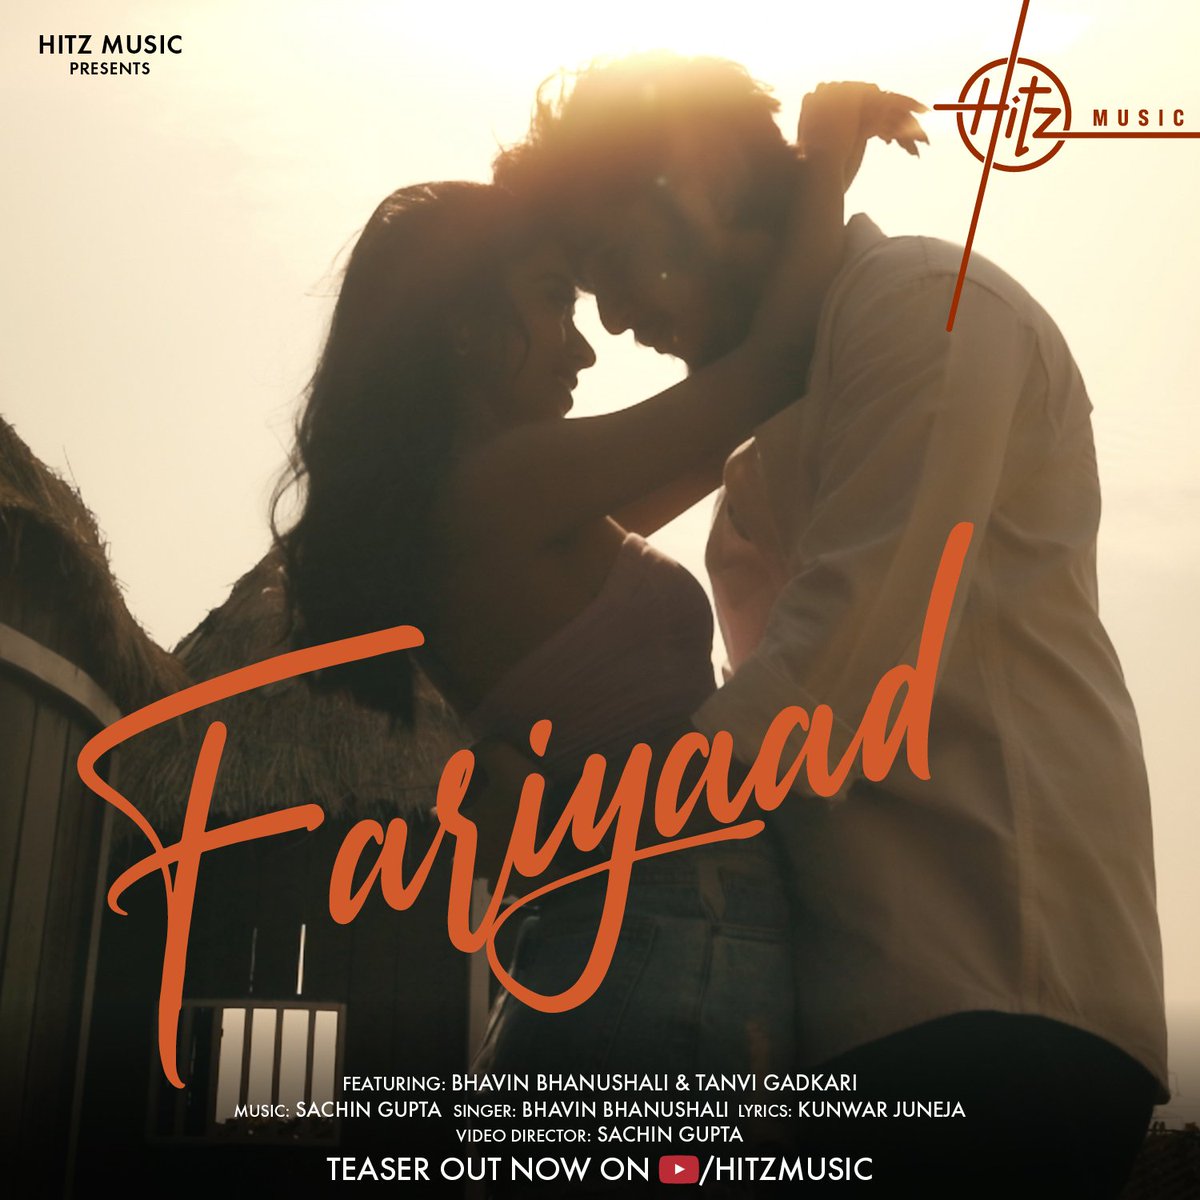 Pyaar ki ek choti si Fariyaad ✨
#LetsFariyaad 🌹 
Teaser out now: bit.ly/FariyaadTeaser
Song out tomorrow only on @HitzMusicoff

#BhavinBhanushali #TanviGadkari @sachingupta1208 #KunwarJuneja